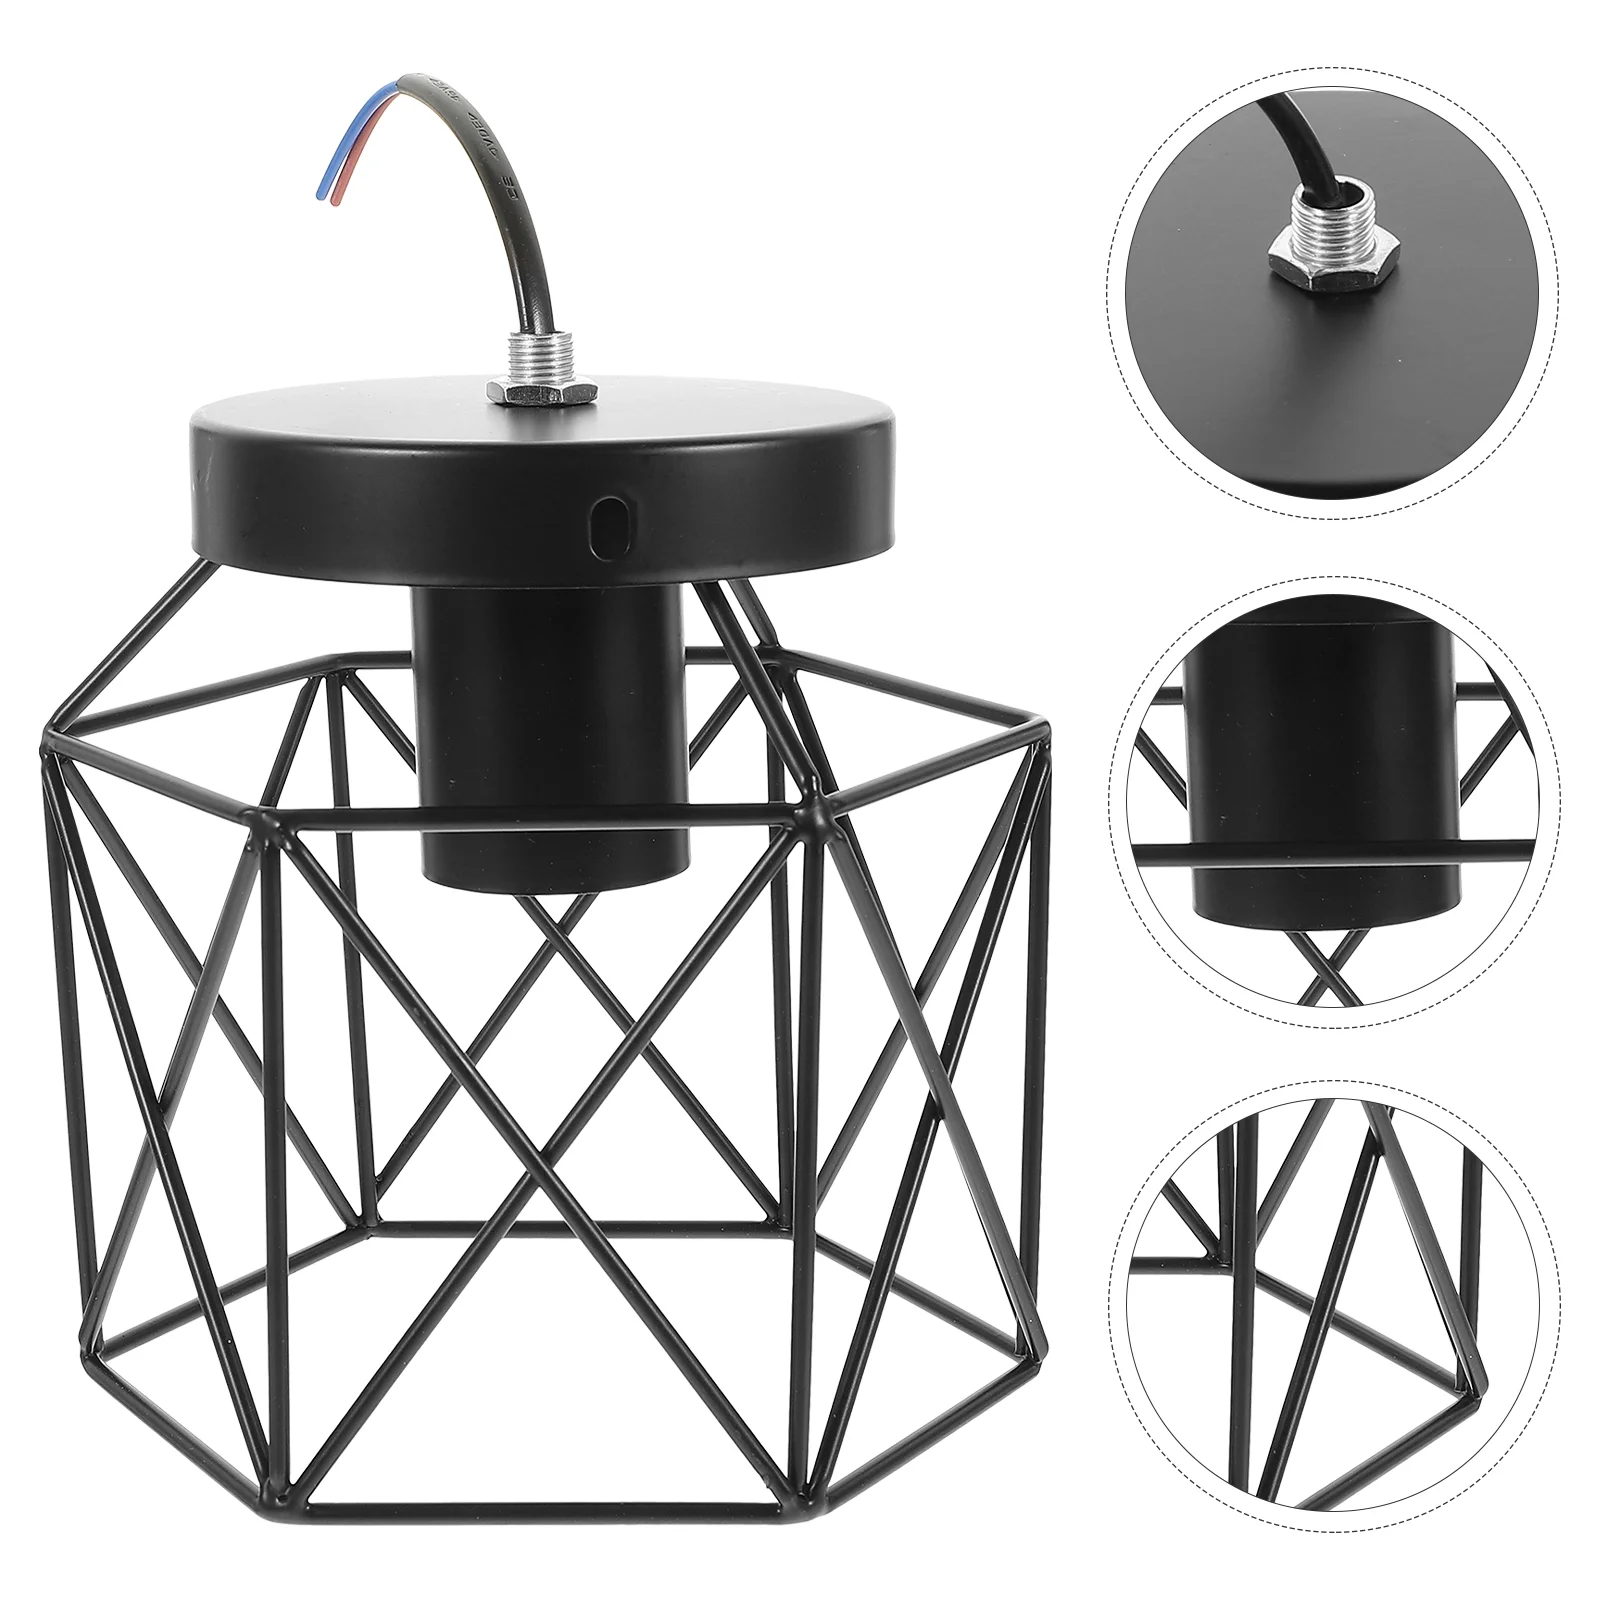 

Потолочная лампа в американском стиле, внутренняя подвесная стандартная нордическая промышленная декоративная железная лампа